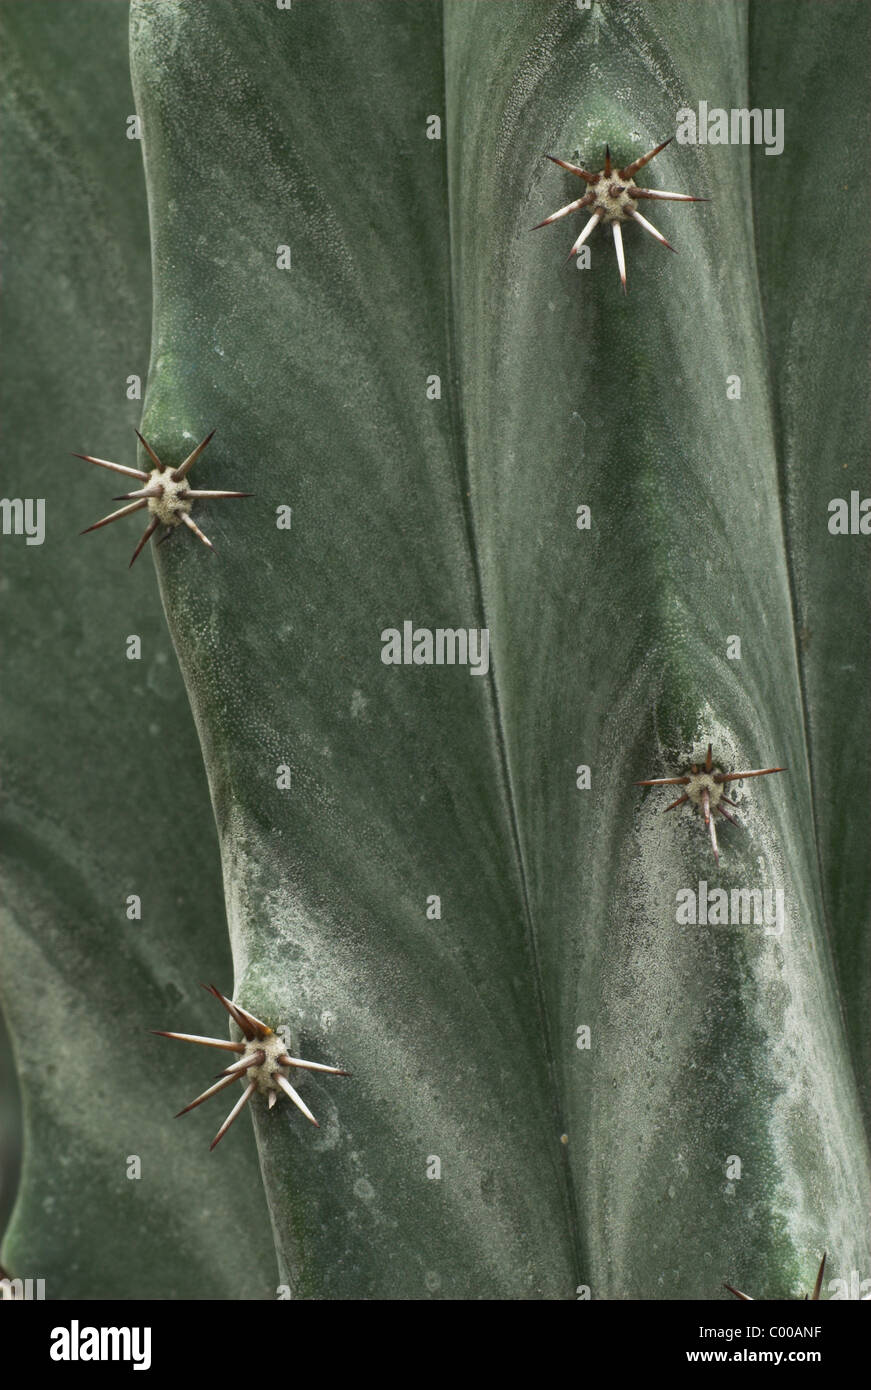 Kaktus, Ritterocereus Standleyi, Struktur der Kutikula Mit Areolen, tun, Cuticula, Dornen Stockfoto